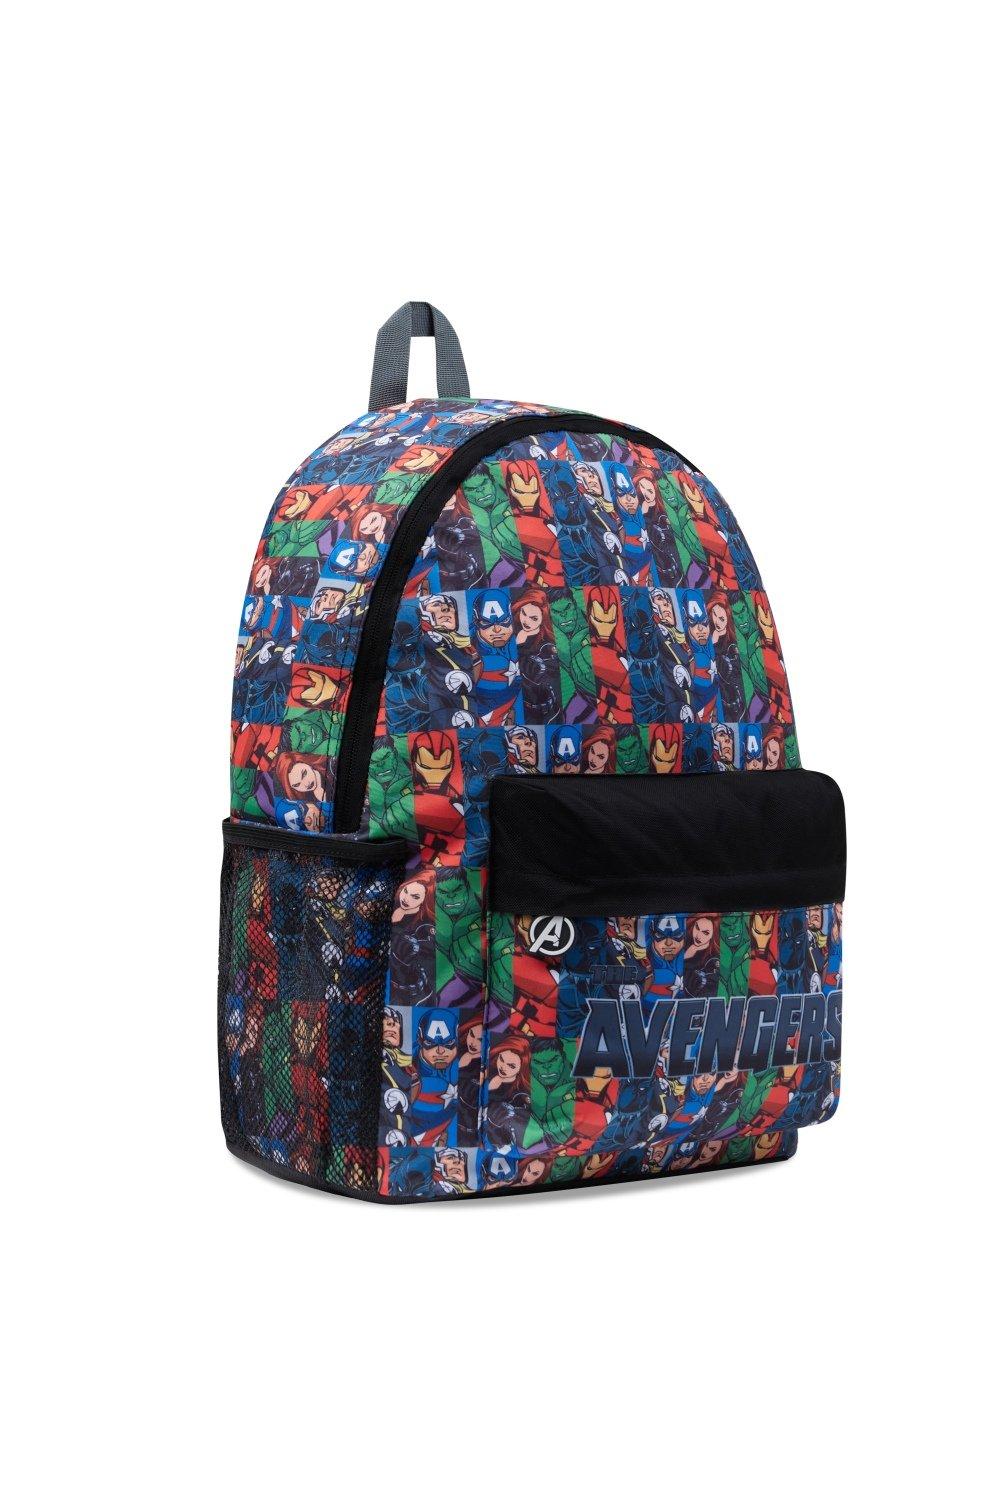 Рюкзак Мстителей большой вместимости Marvel, мультиколор командный рюкзак beaver для девочек и мальчиков забавный дорожный ранец для подростков школьная сумка